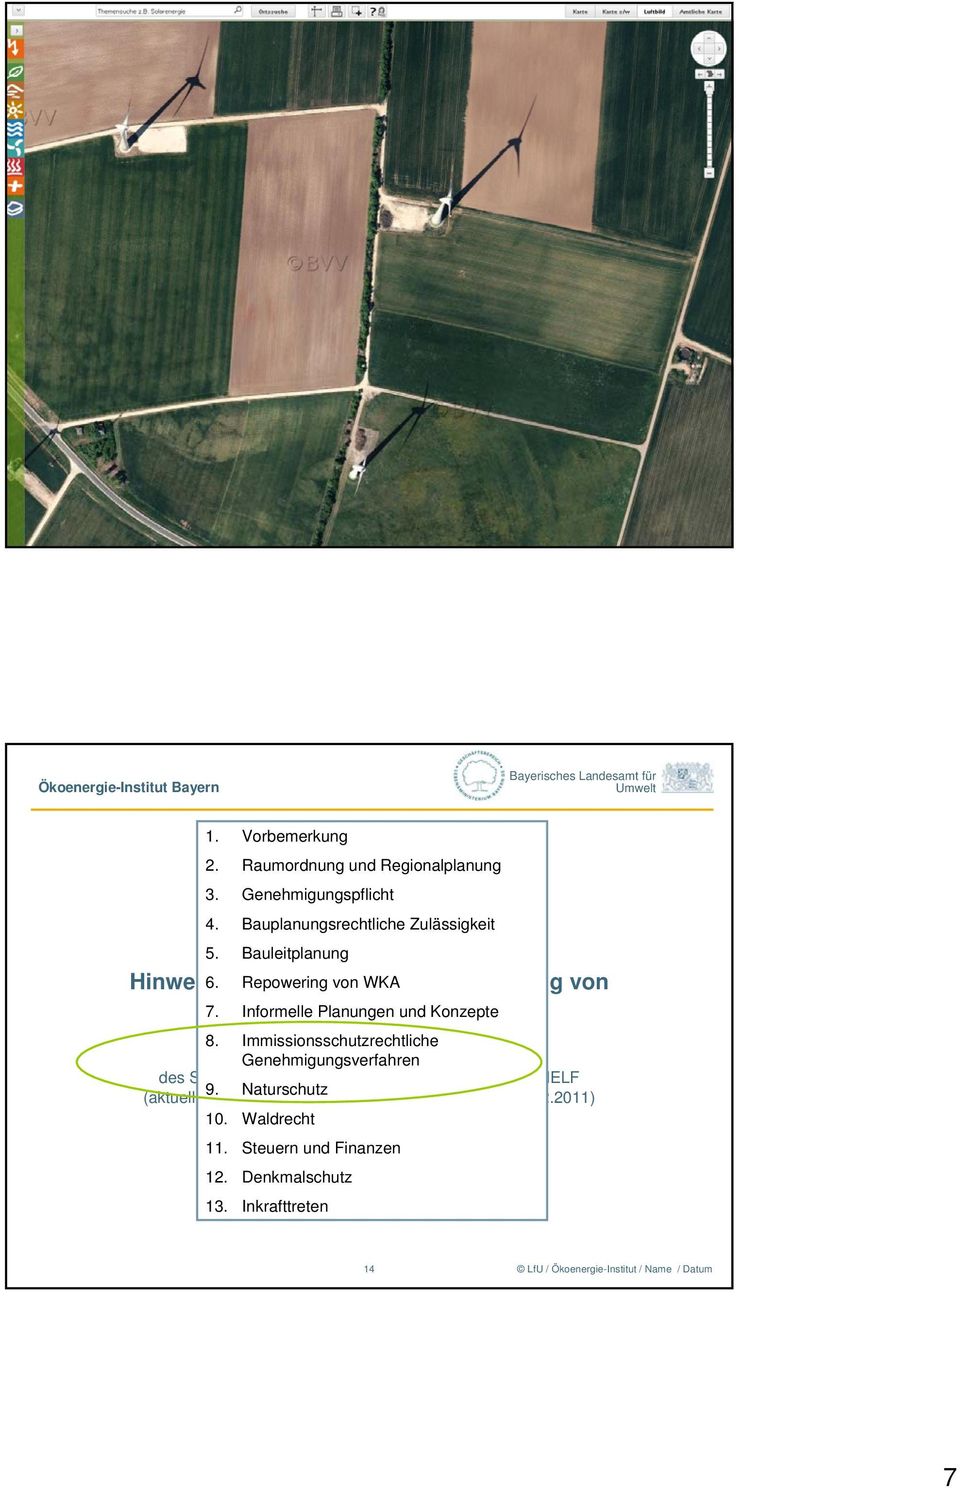 Windkraftanlagen Informelle Planungen und Konzepte (WKA) 8.